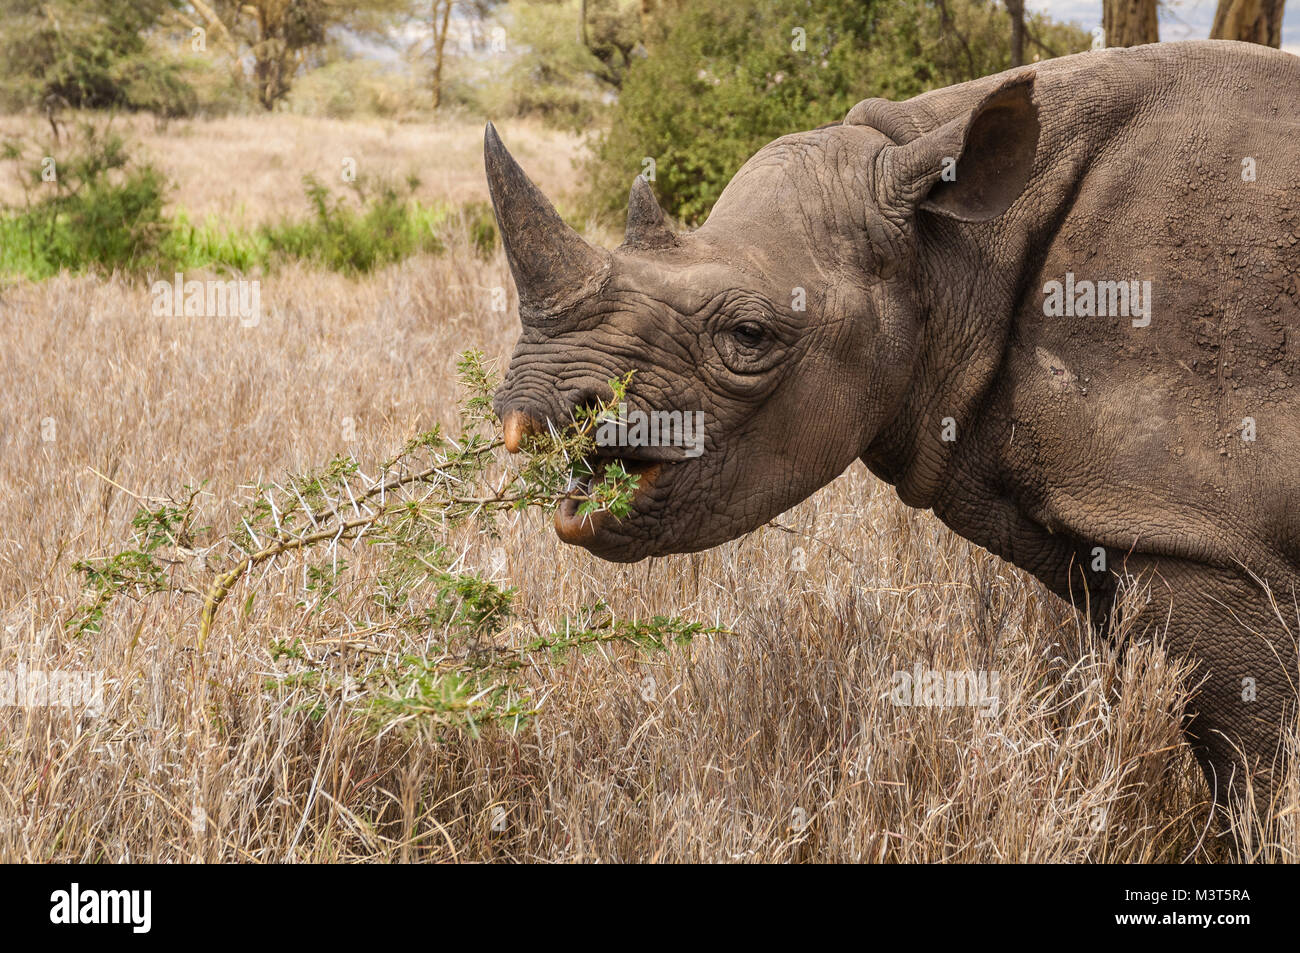 Rinocerontes negros (Diceros bicornis michaeli) son los principales objetivos de los cazadores furtivos que cazan por sus cuernos, de gran demanda en el Lejano Oriente para uso en tradit Foto de stock